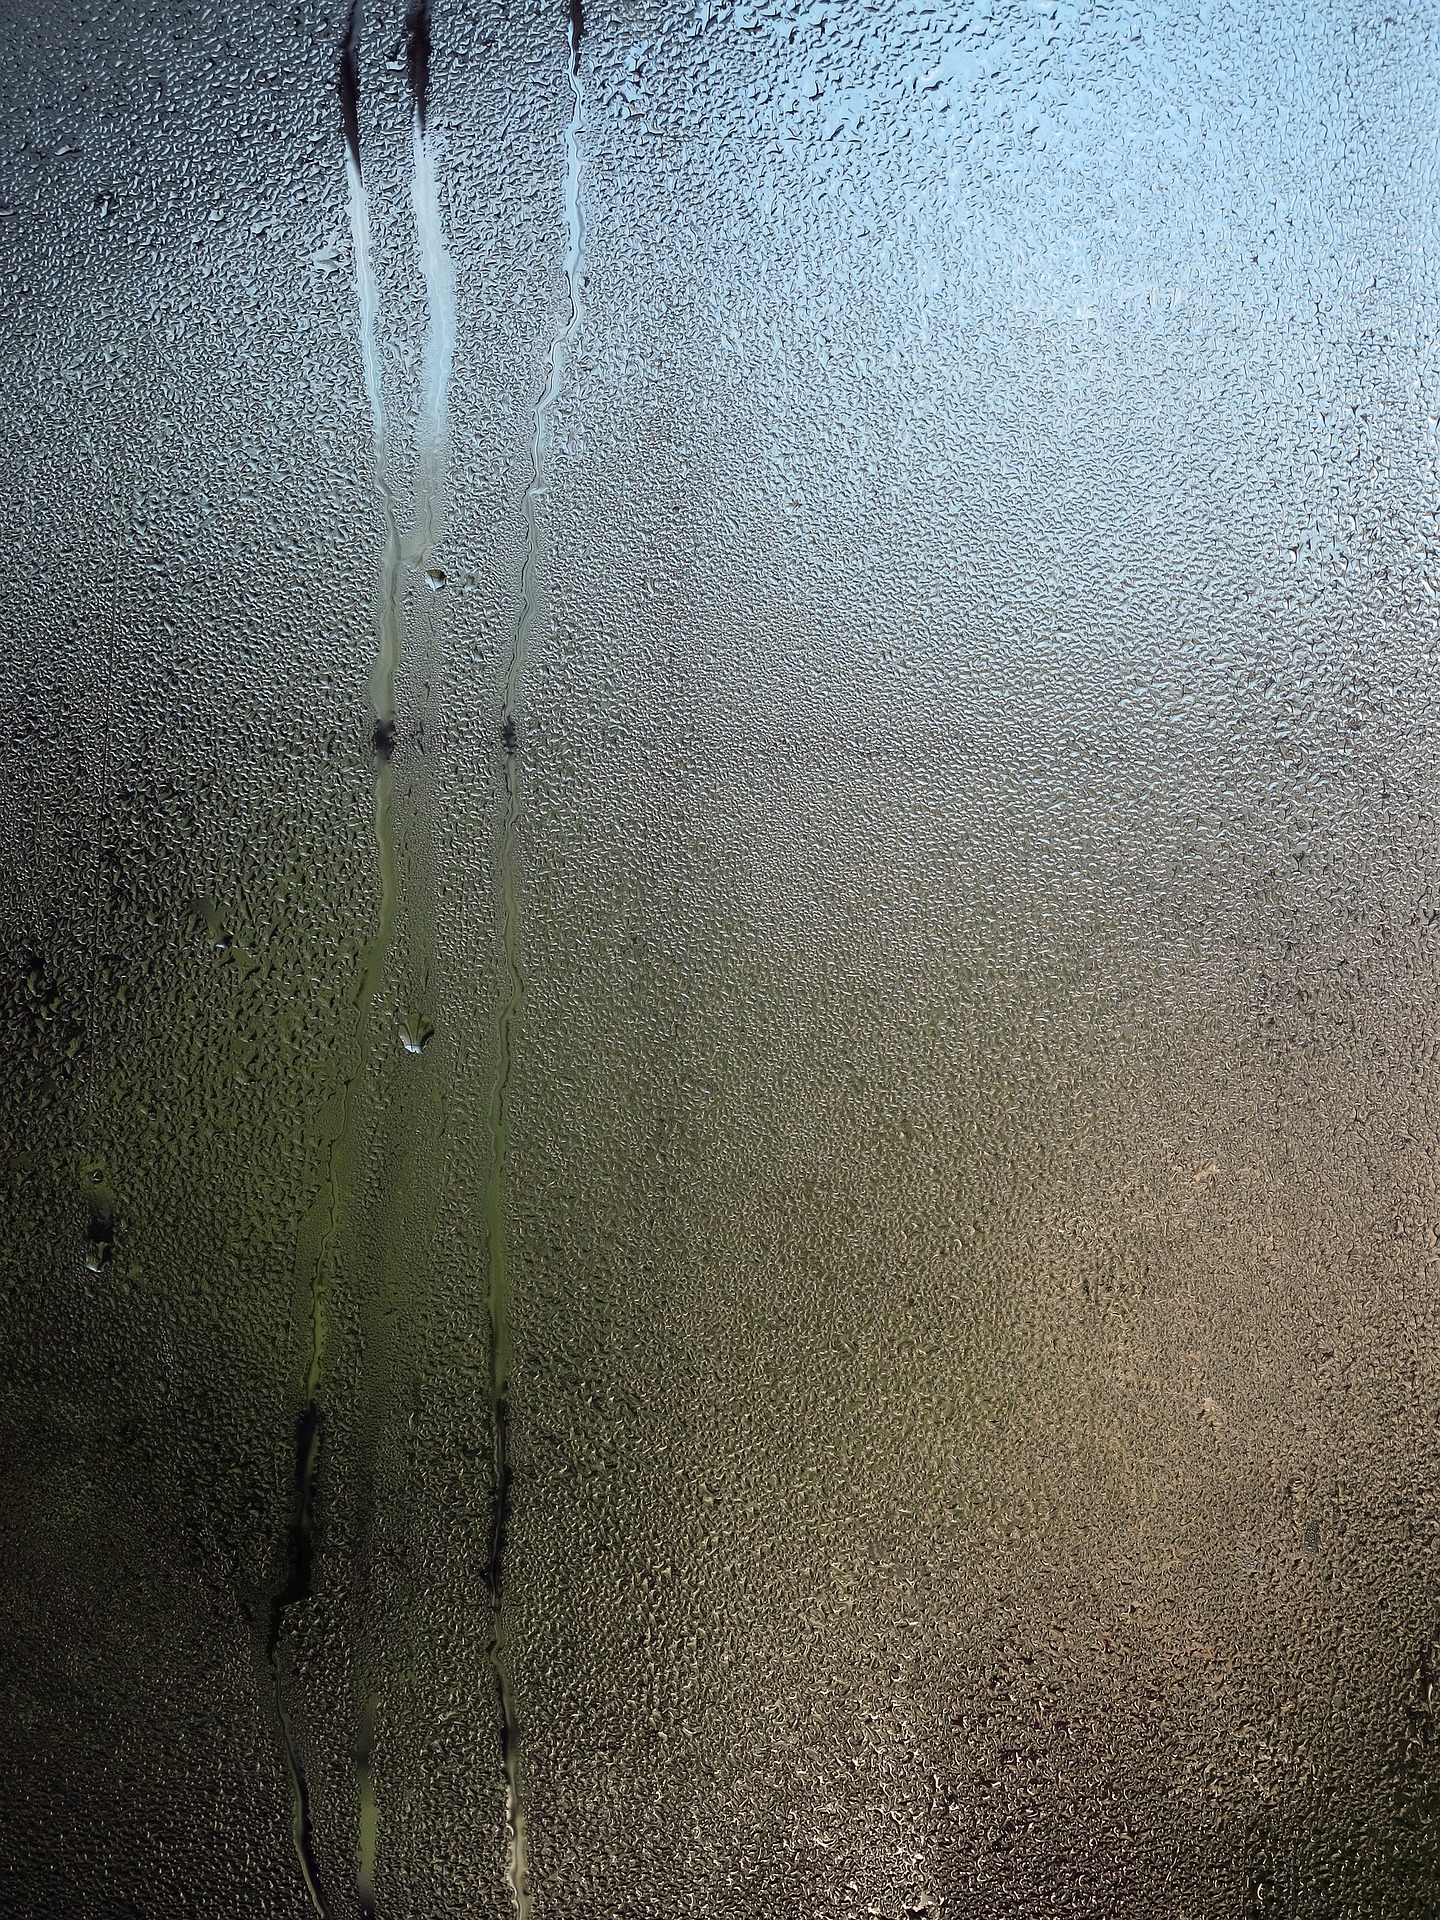 Tauwasser auf einem Spiegel (Bild von Wolfgang Eckert auf Pixabay.com)